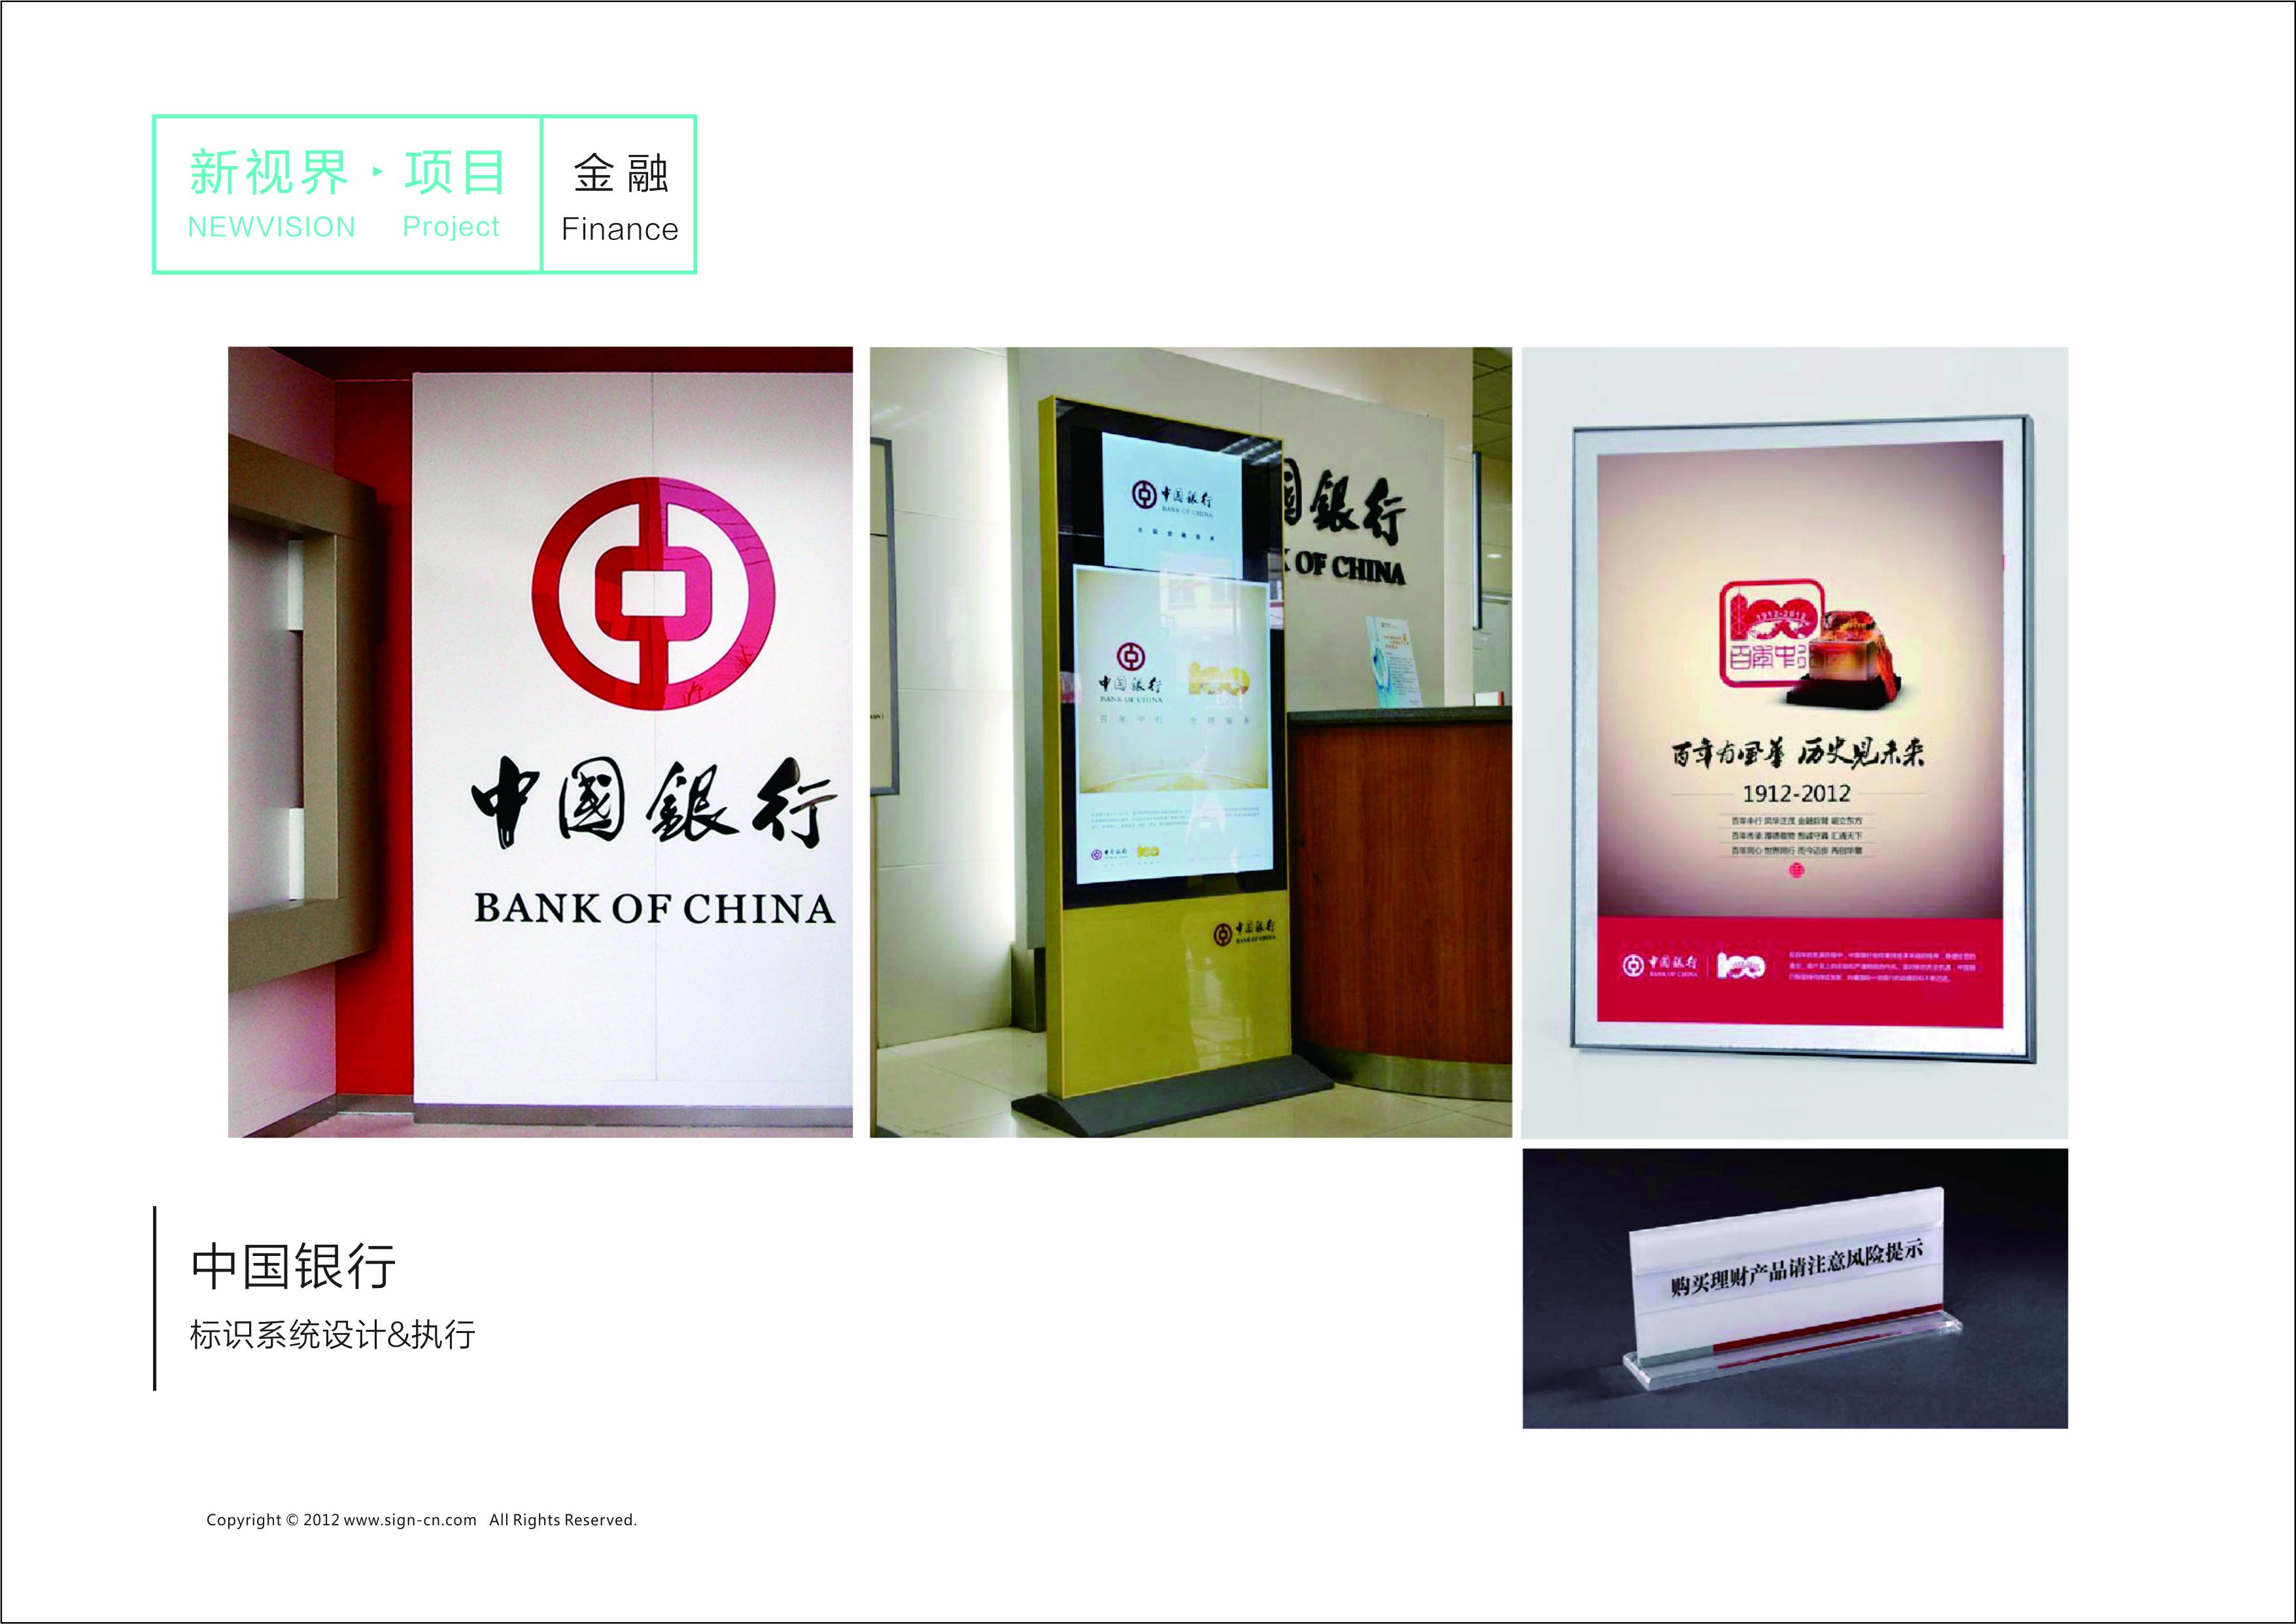 中国银行标识系统